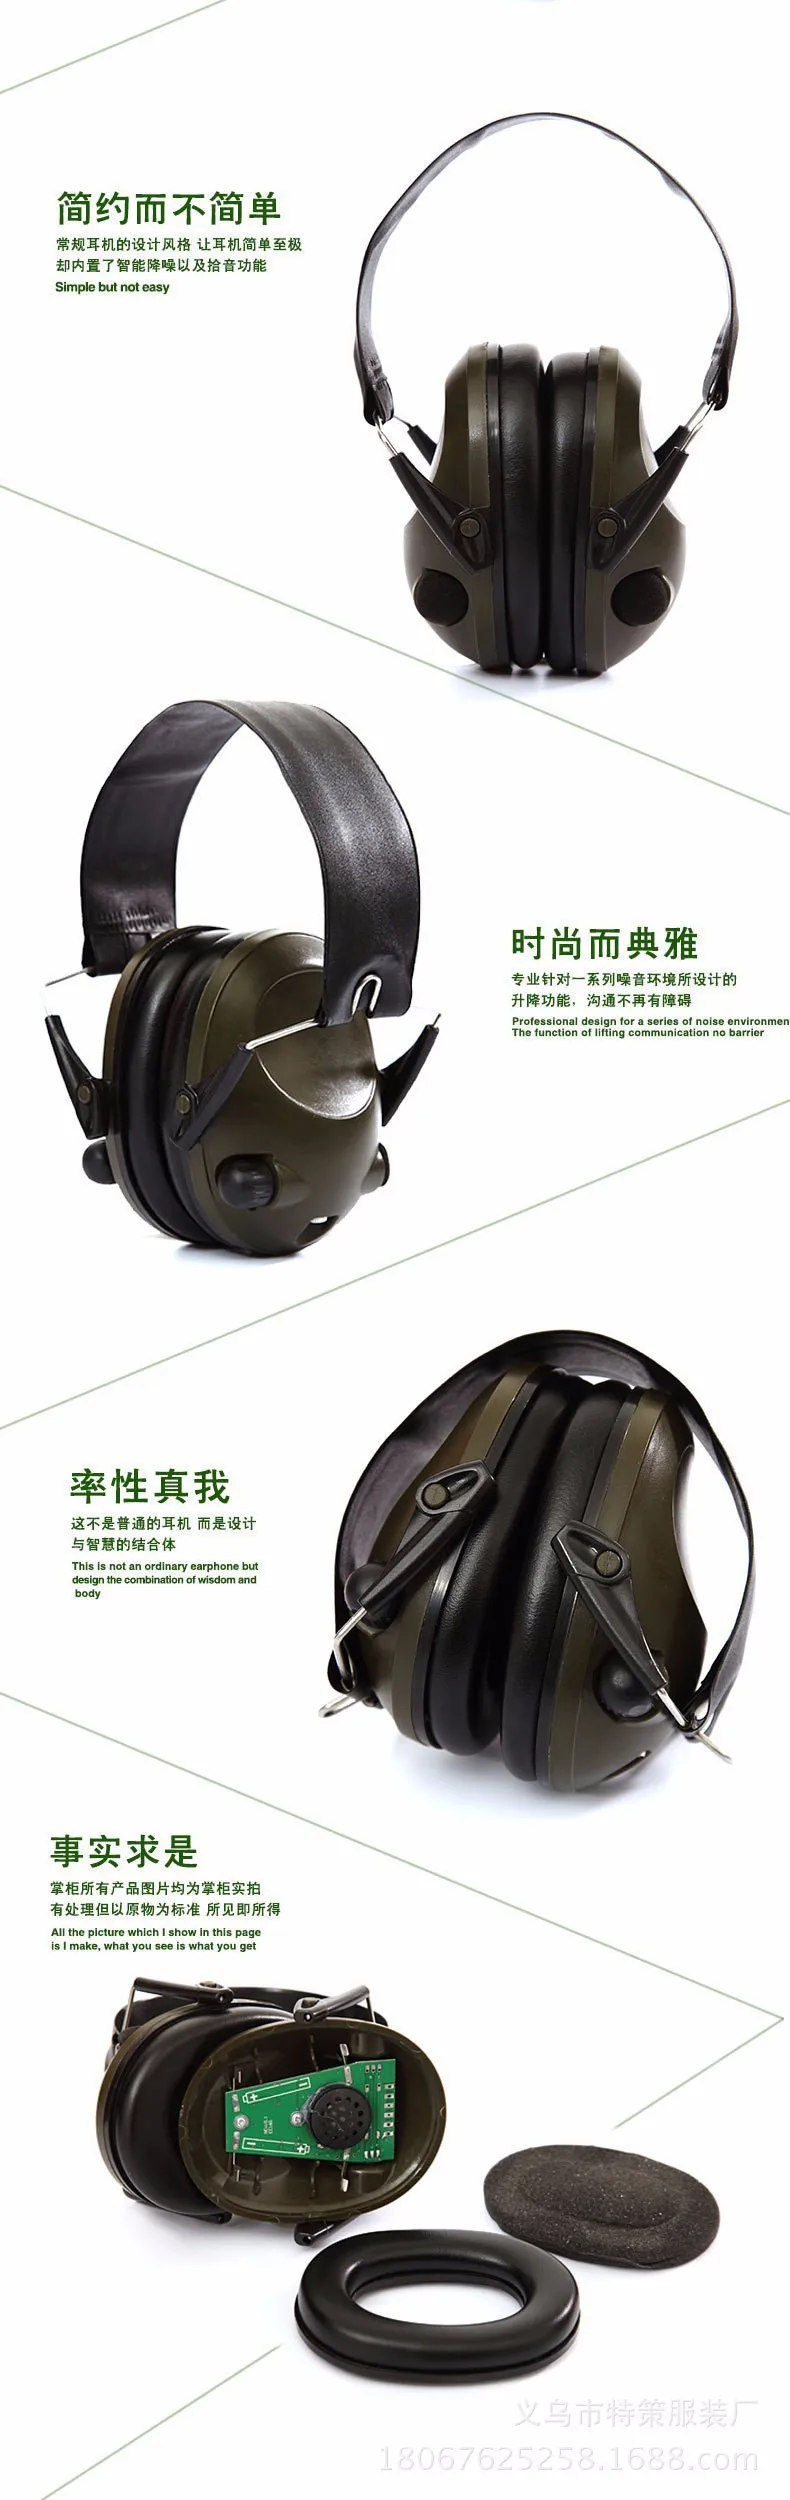 Actical ComtacAnti-noise спортивный охотничий электронный противошумный наушник защита ушей тактические Защитные наушники для слуха наушники